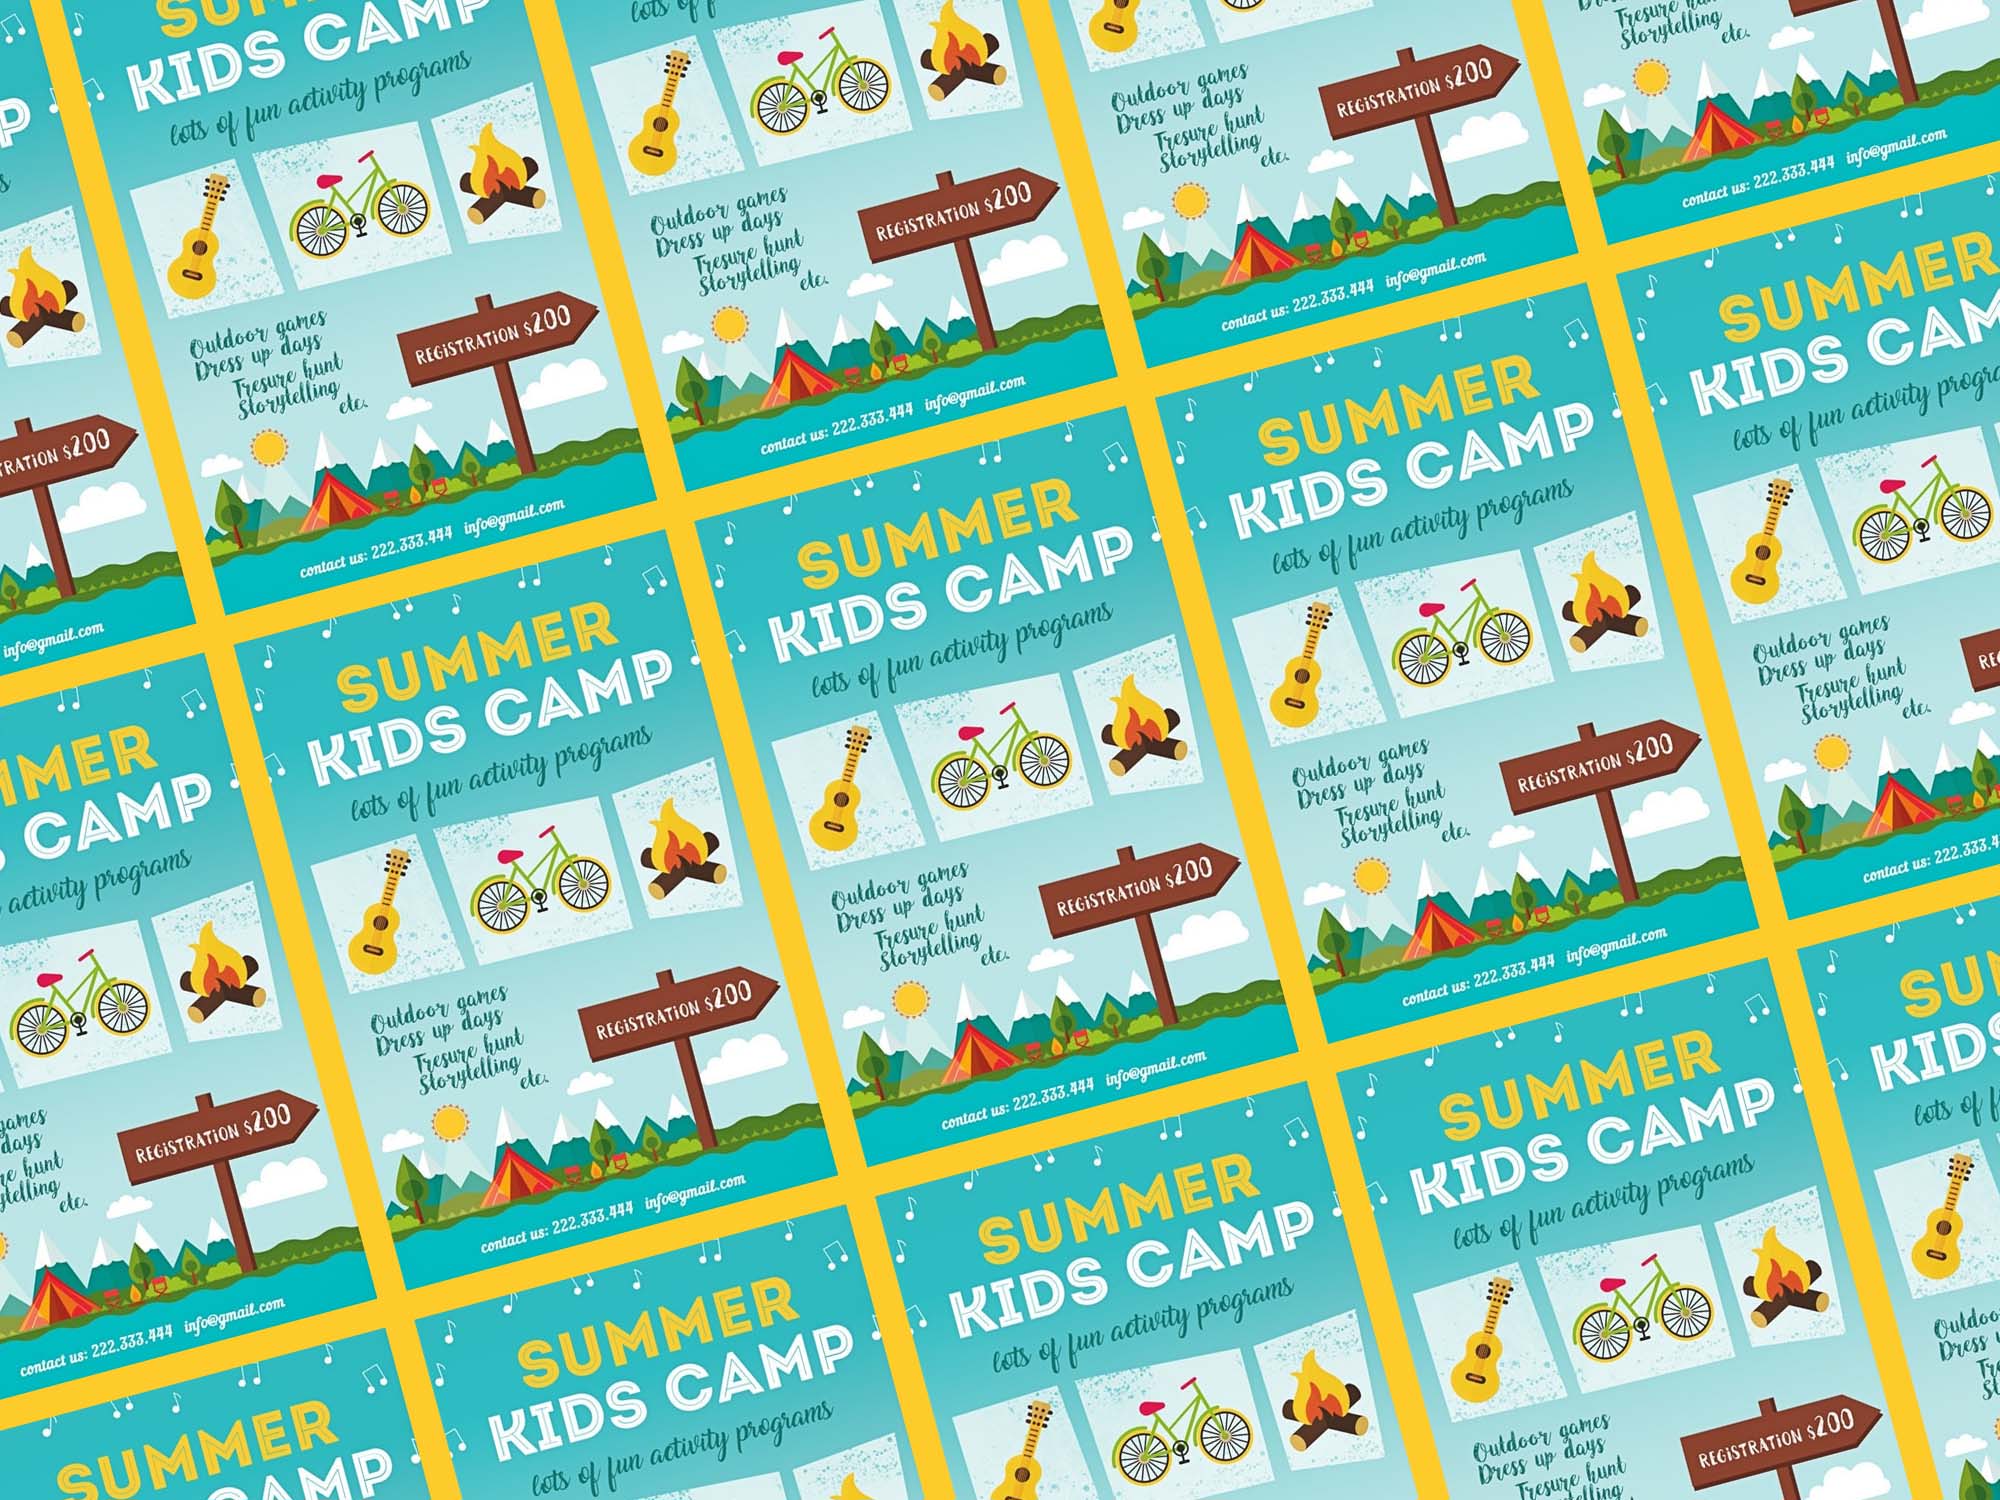 Summer Kids Camp Flyer Template  PSD  Free Download  iMockups With Free Summer Camp Flyer Template